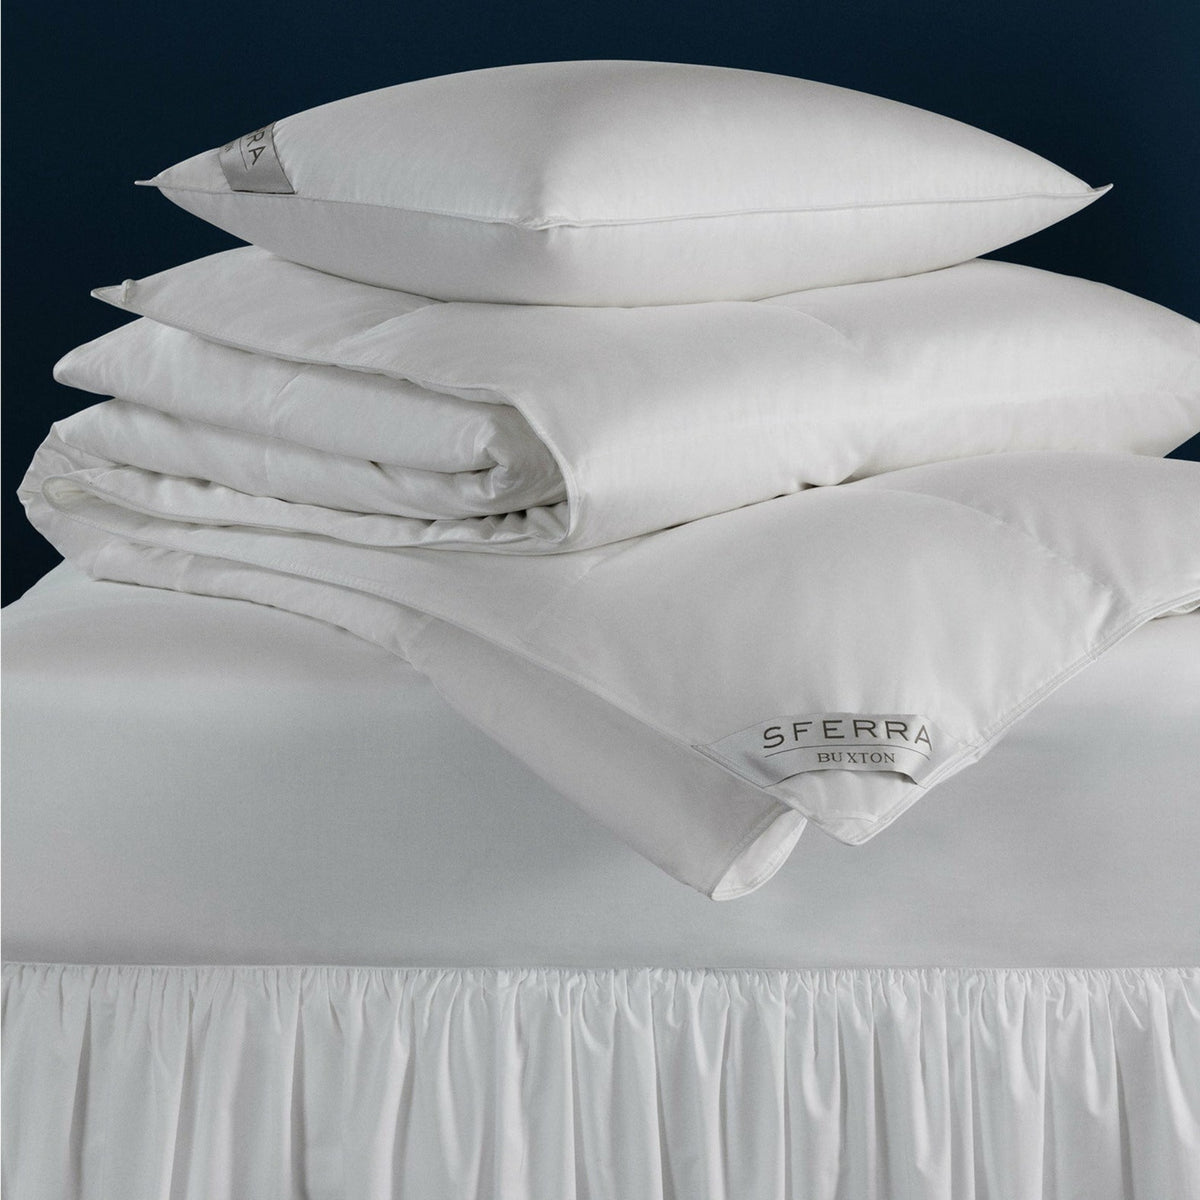 Sferra Buxton Goose Down Pillows Light Weight Fine Linens